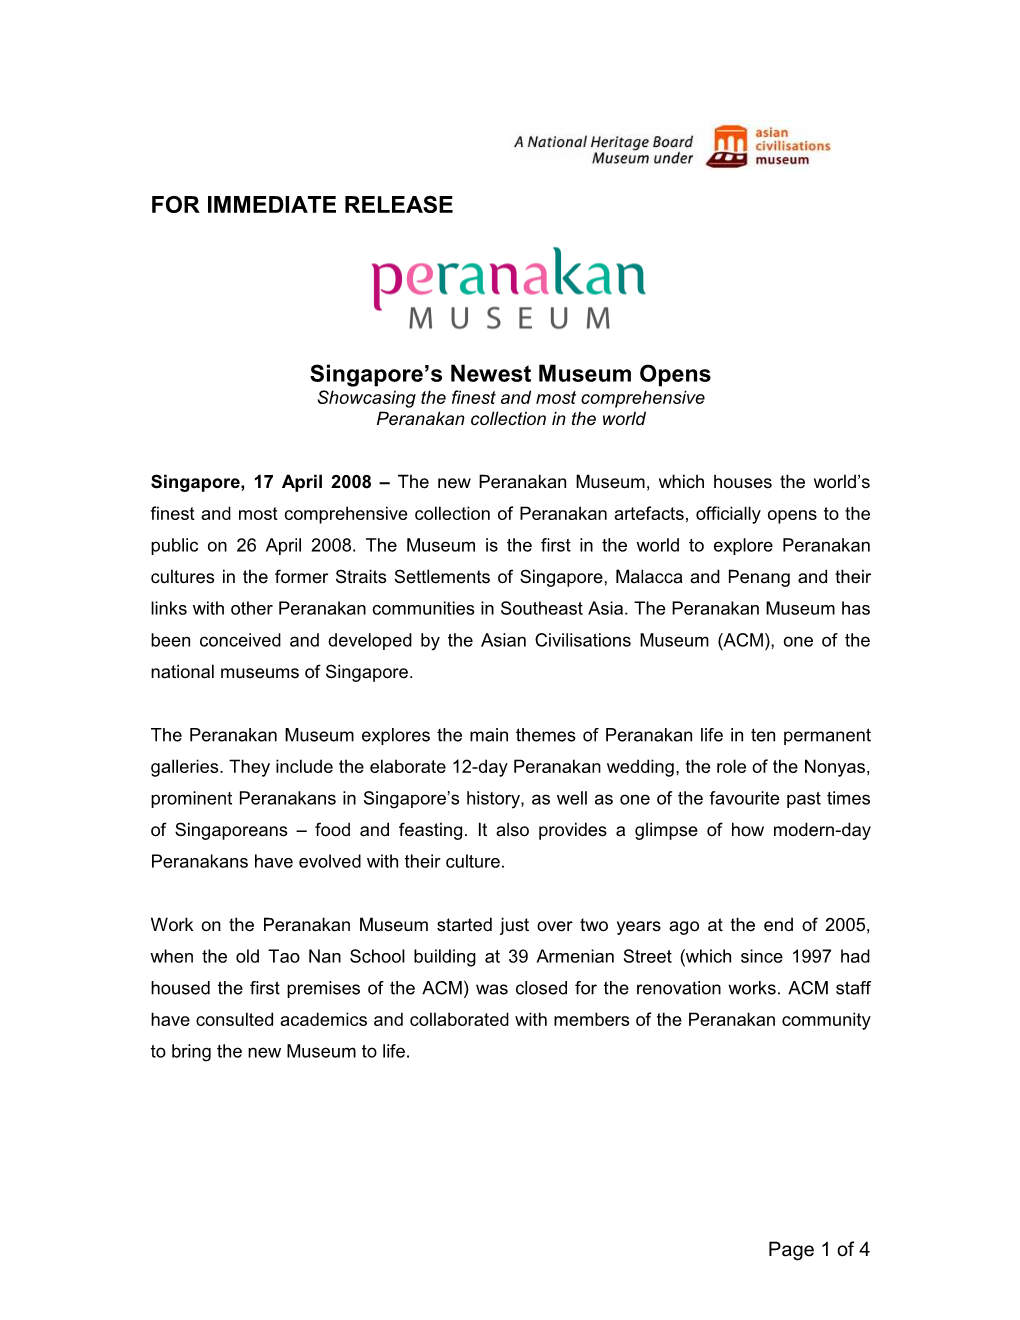 Peranakan Museum Press Release